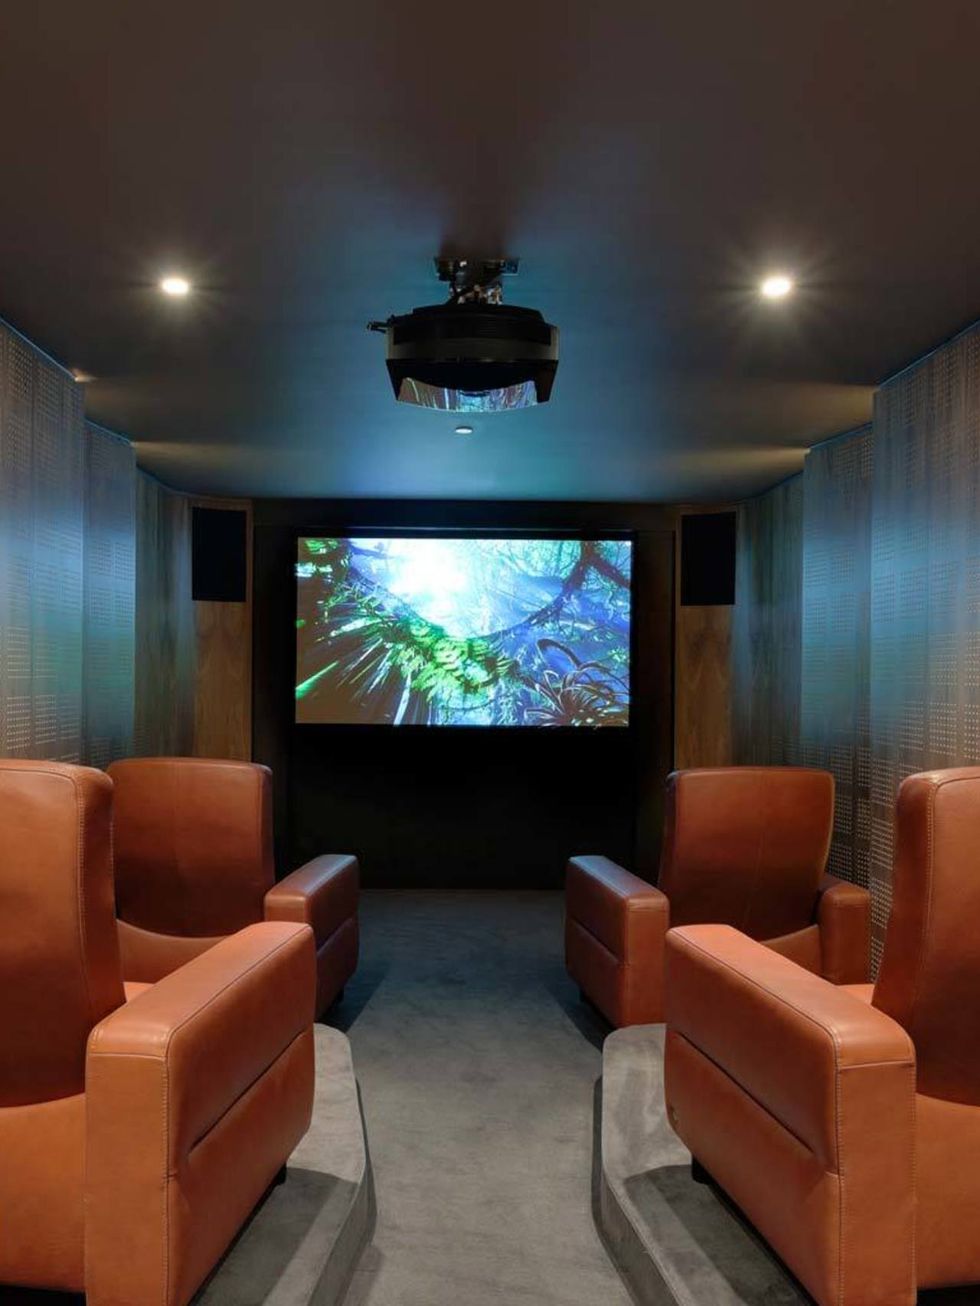 Cómo crear una sala de cine en casa - Taringa!  Media room design, Home  cinema room, Home theater rooms